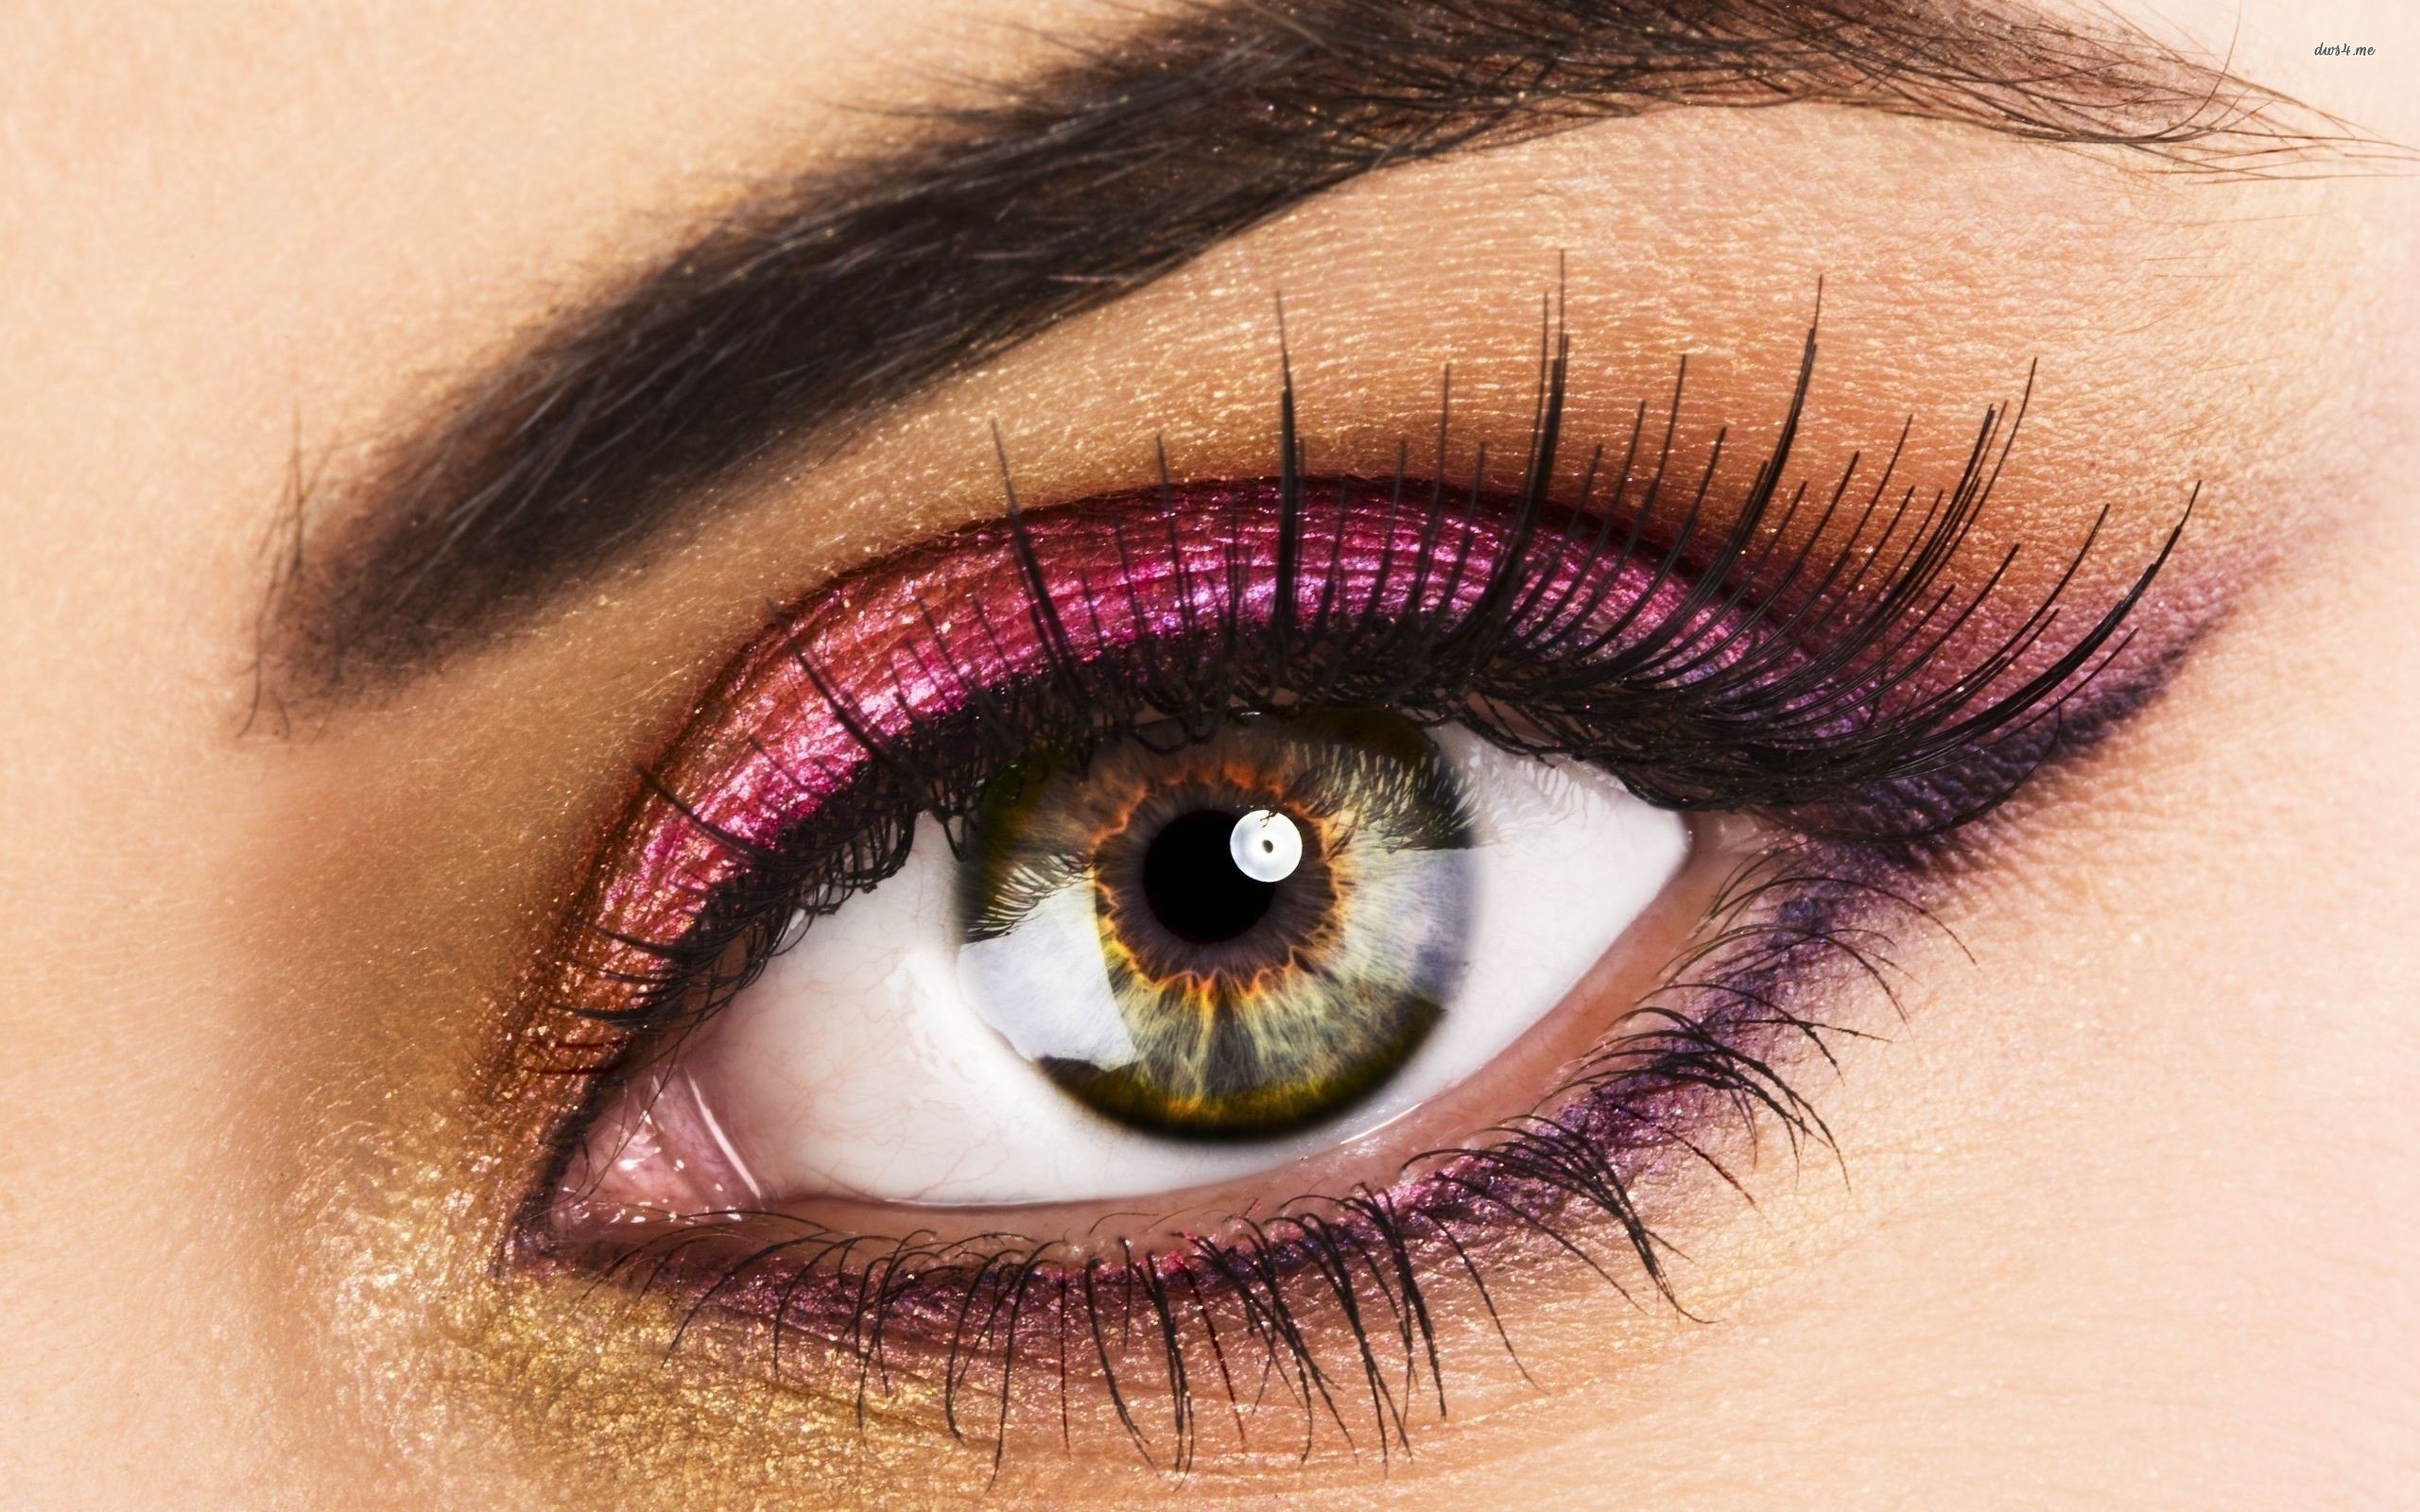 30 Glamorous Eye Makeup Ideas - The WoW Style